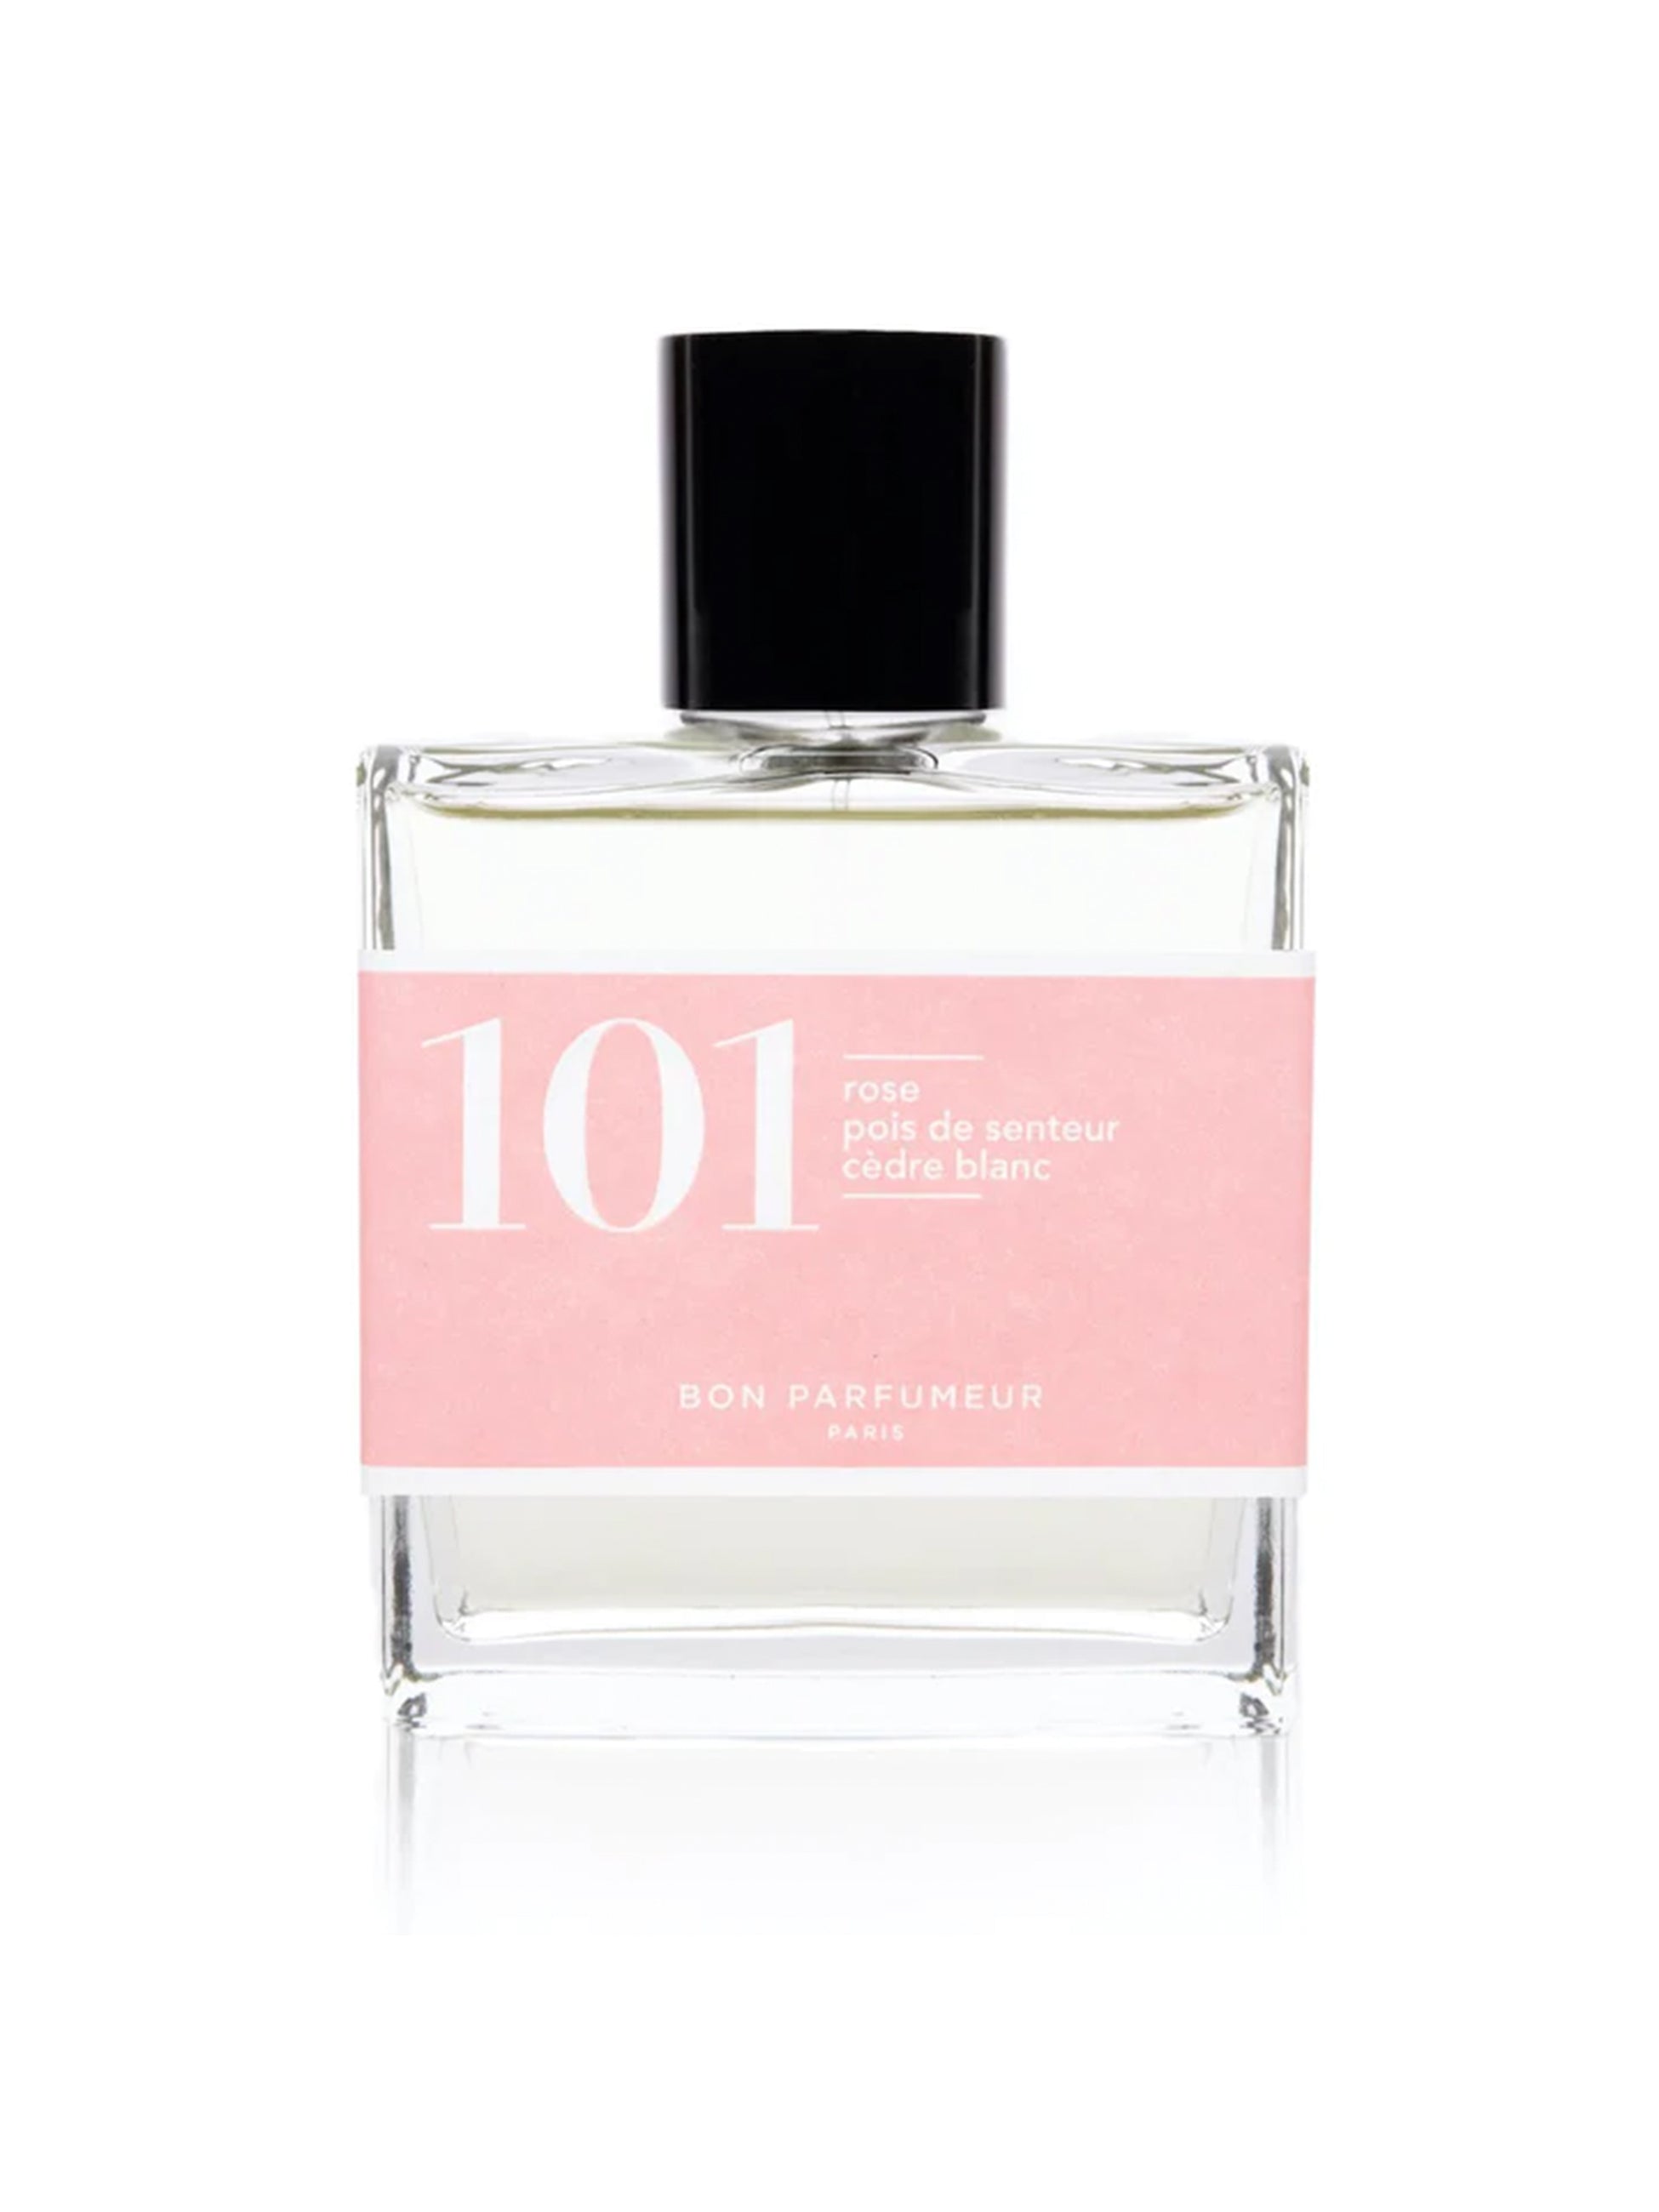 Eau de parfum 101: Rose/Sweetpea/White cedar